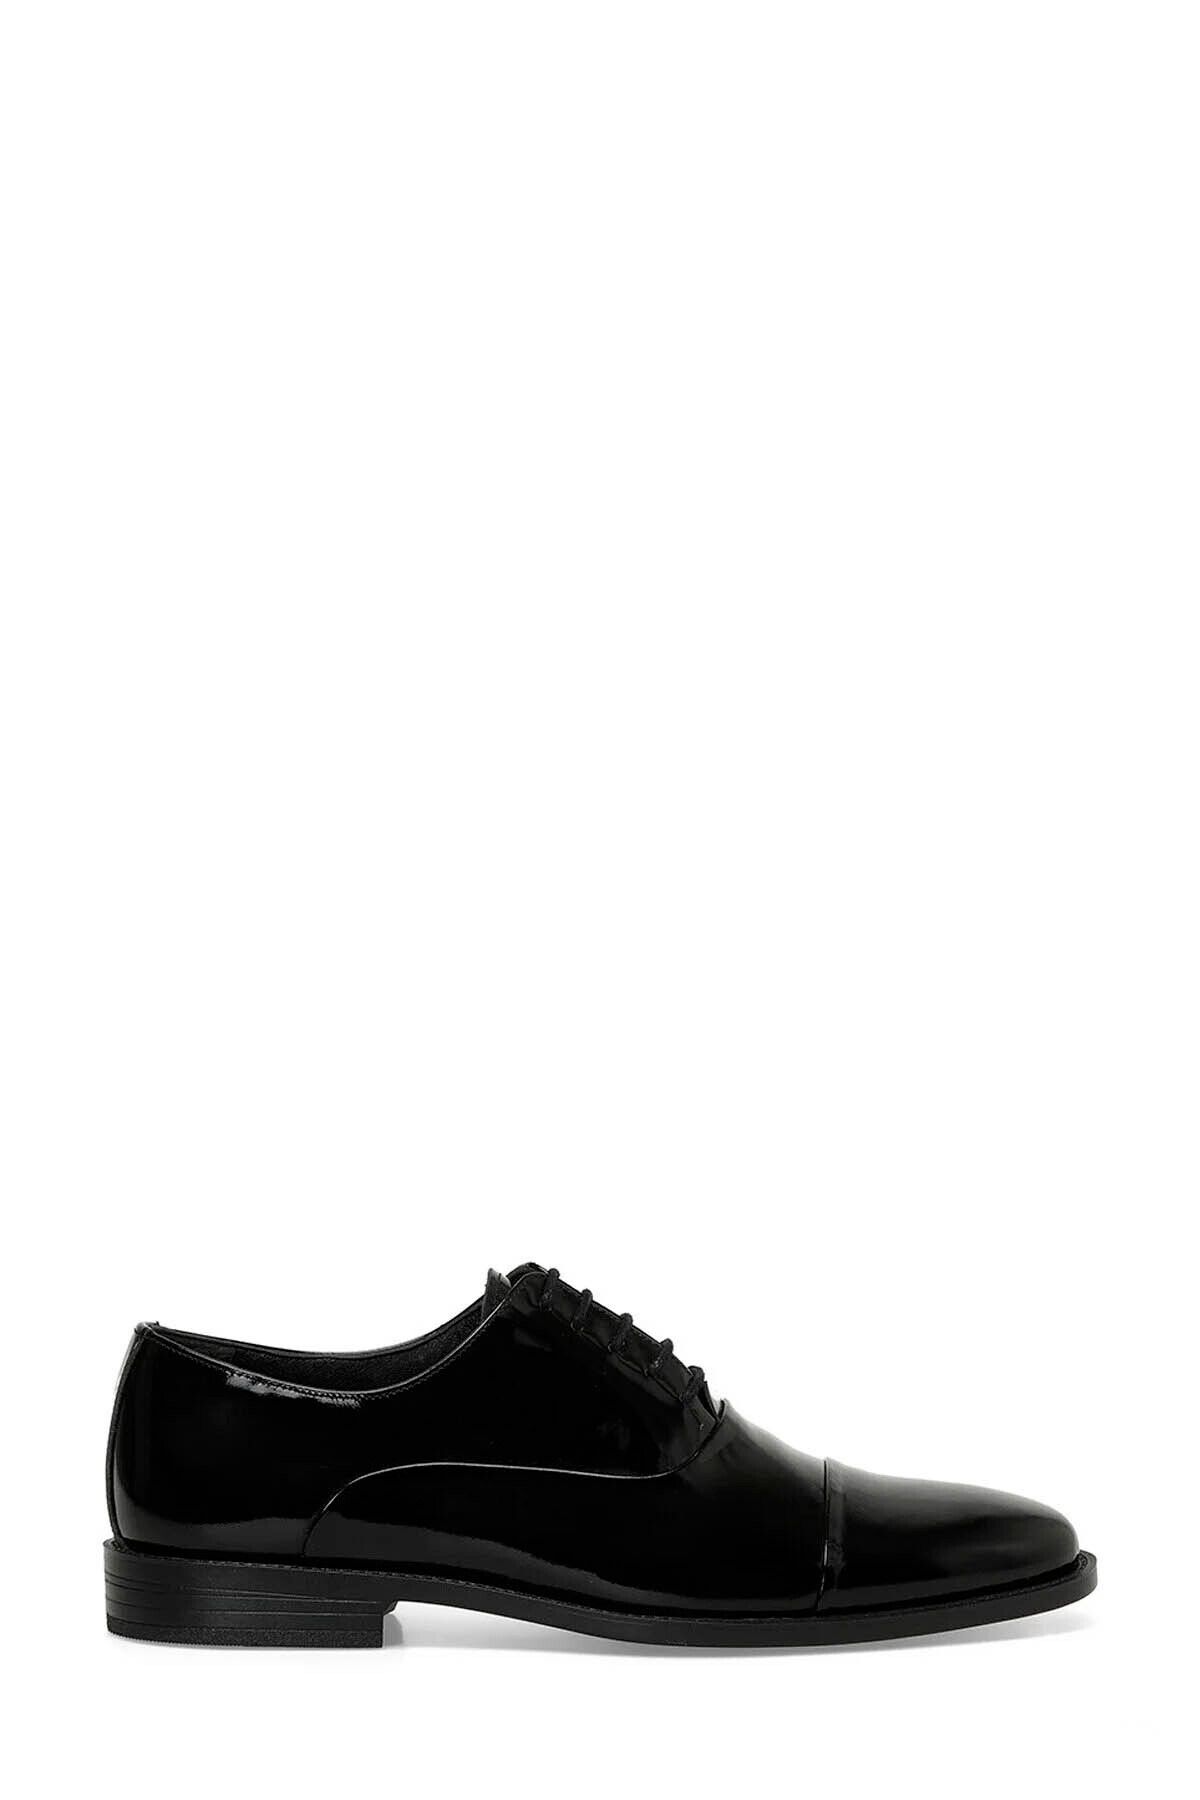 İnci Erkek Klasik Ayakkabı Siyah 101544670 Max R 4fx Incı